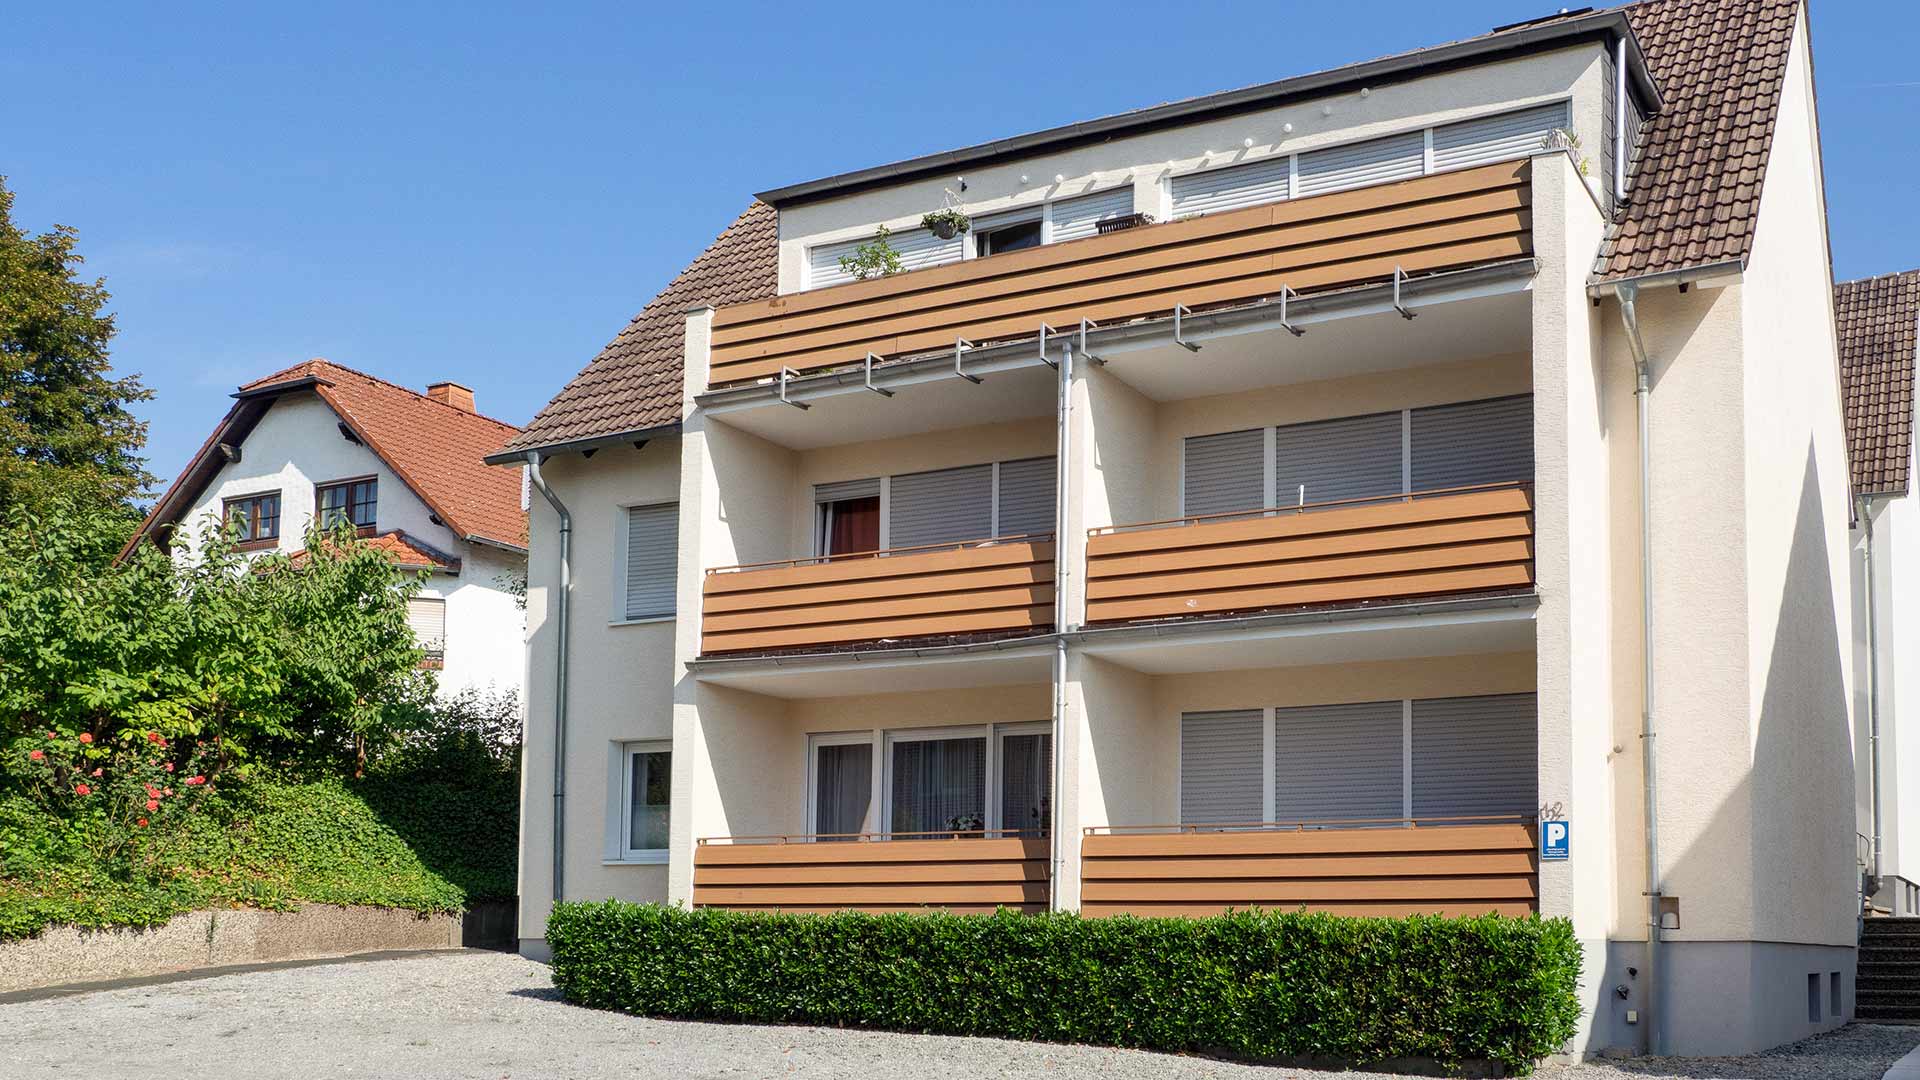 thater IMMOBILIEN GmbH - Immobilienangebot - 33106 Paderborn - Wewer - Mehrfamilienhaus - 5471 | Mehrfamilienhaus mit fünf Wohnungen